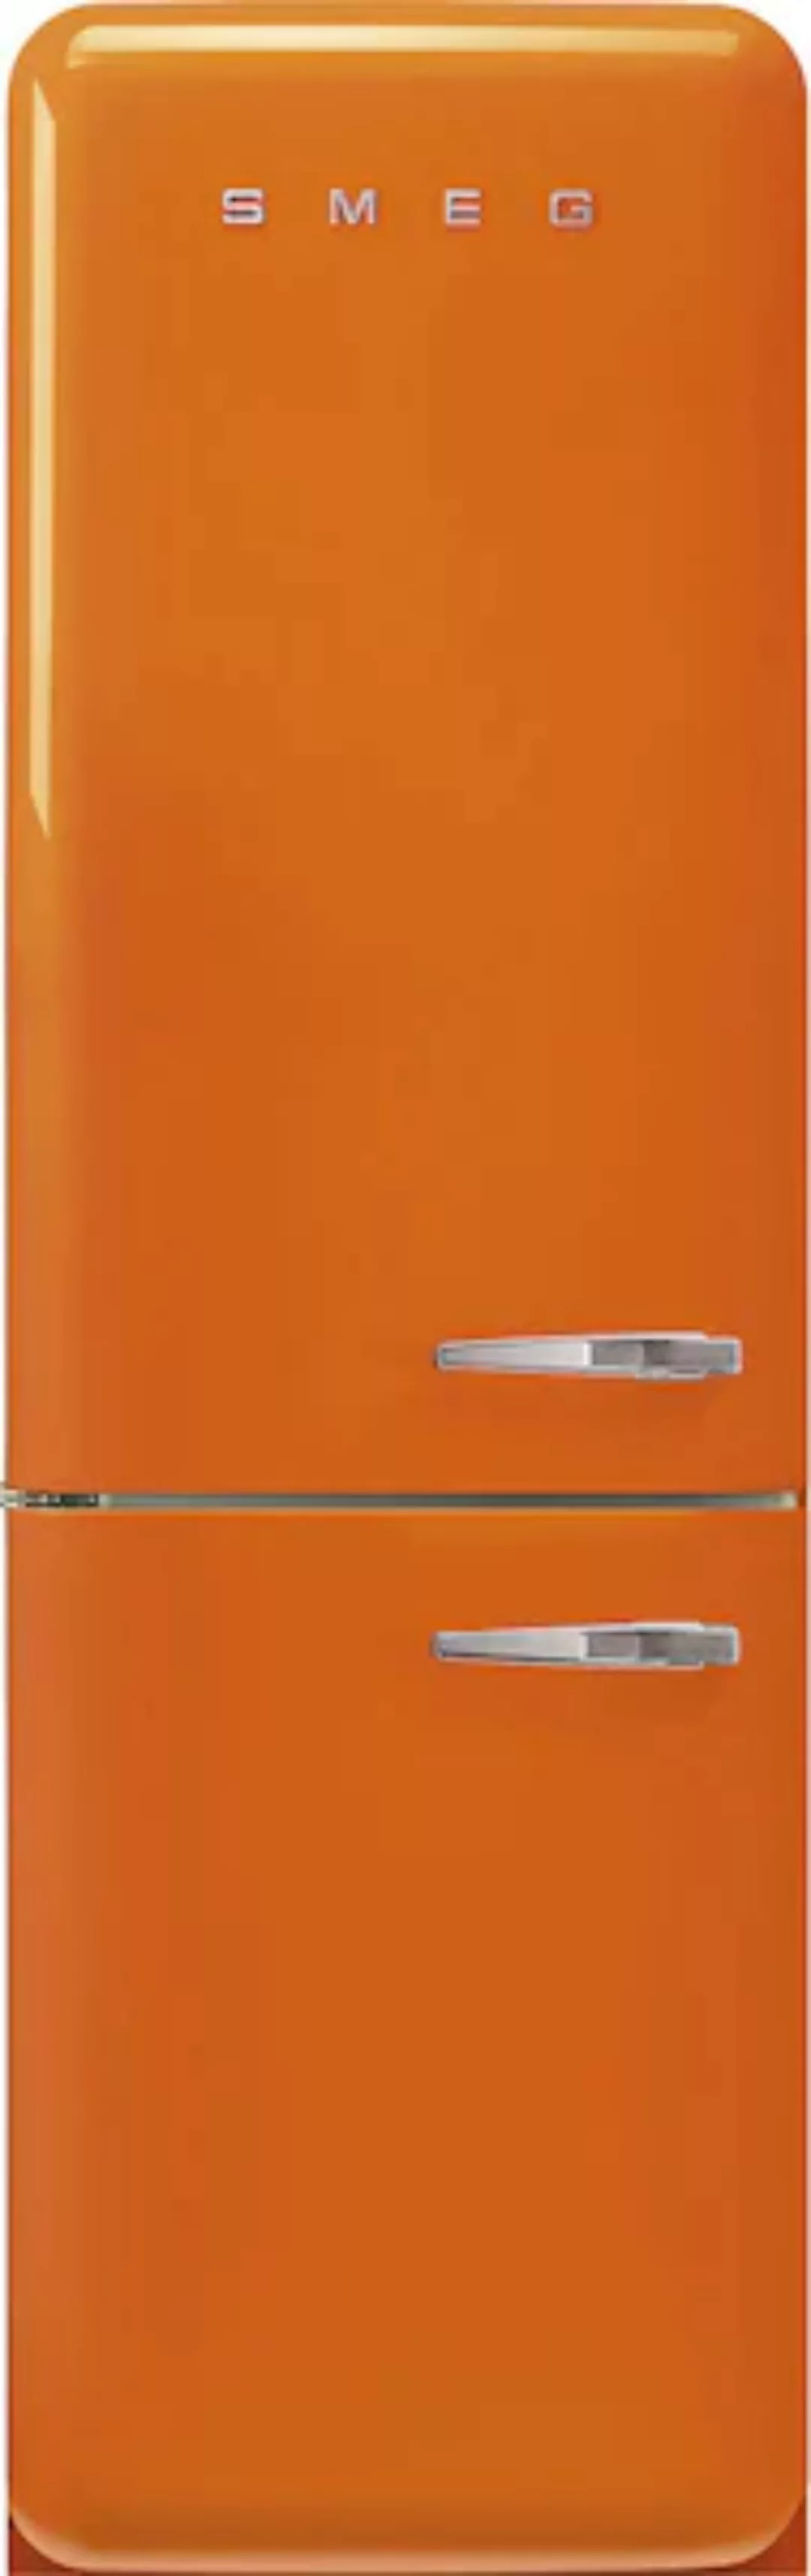 Smeg - FAB32 Kühl-/Gefrierkombination - orange/lackiert/Türnanschlag links/ günstig online kaufen